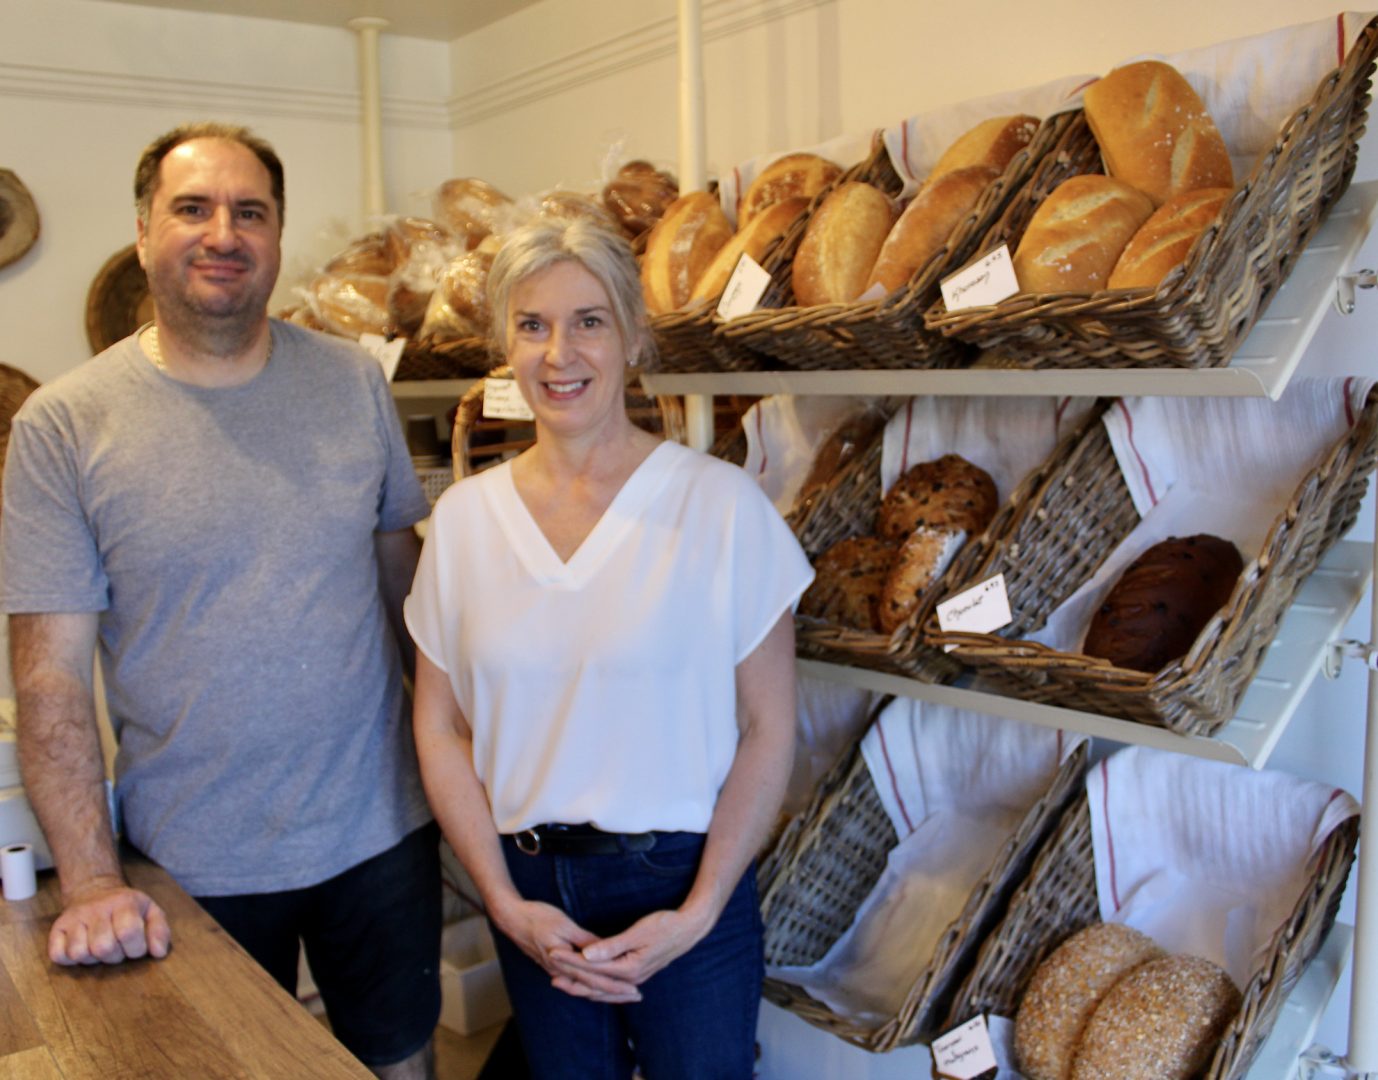 Cédric et Chantal nous offraient leurs bons pains, viennoiseries et pâtisseries depuis juin 2013